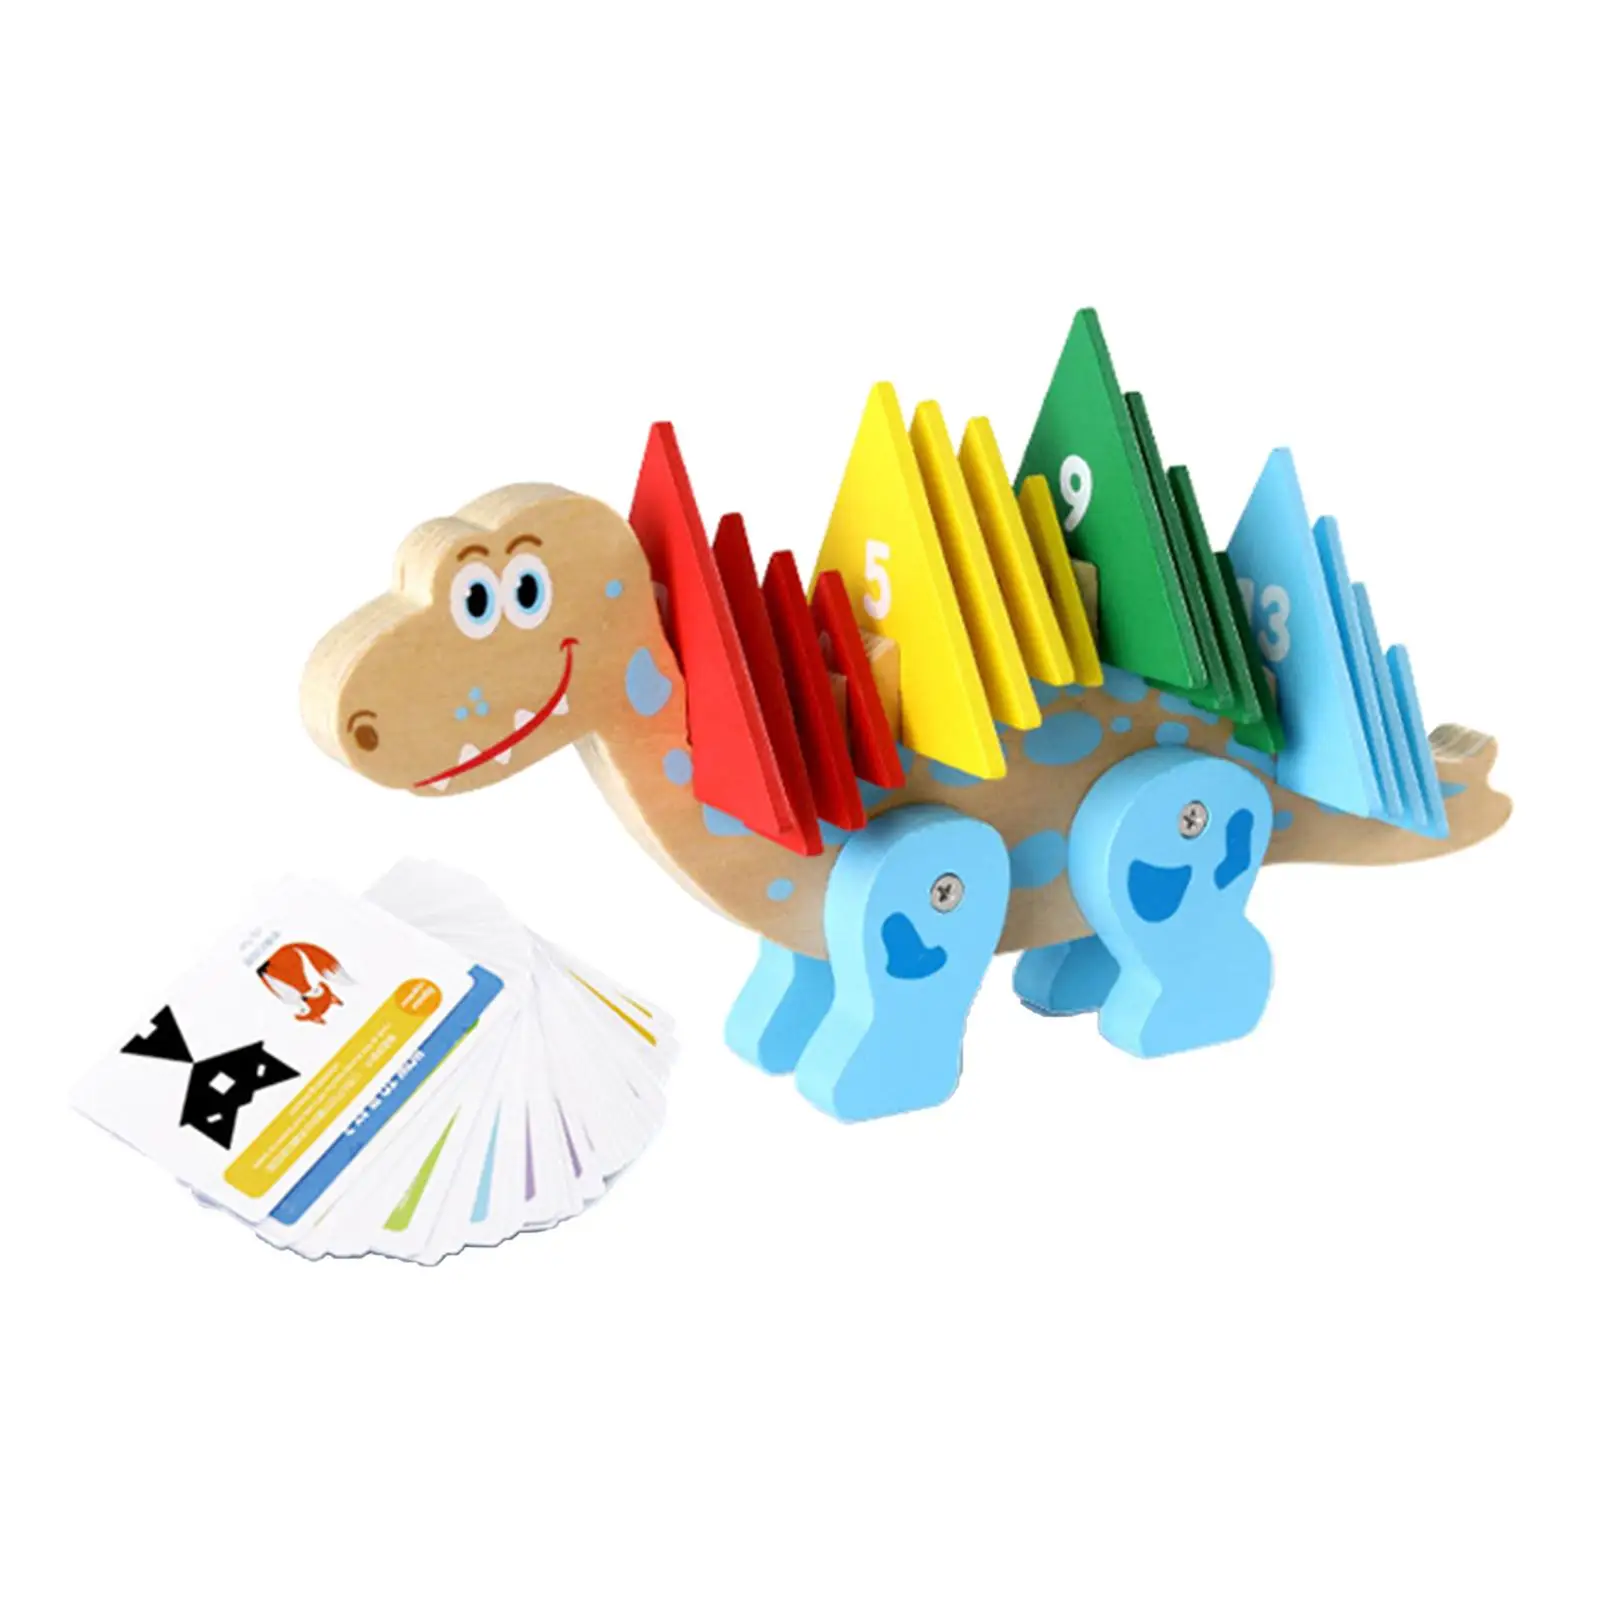 

Математическая обучающая игрушка, очаровательный динозавр, развивающая игрушка, познавательная игра, детские математические блоки, игрушка для малышей